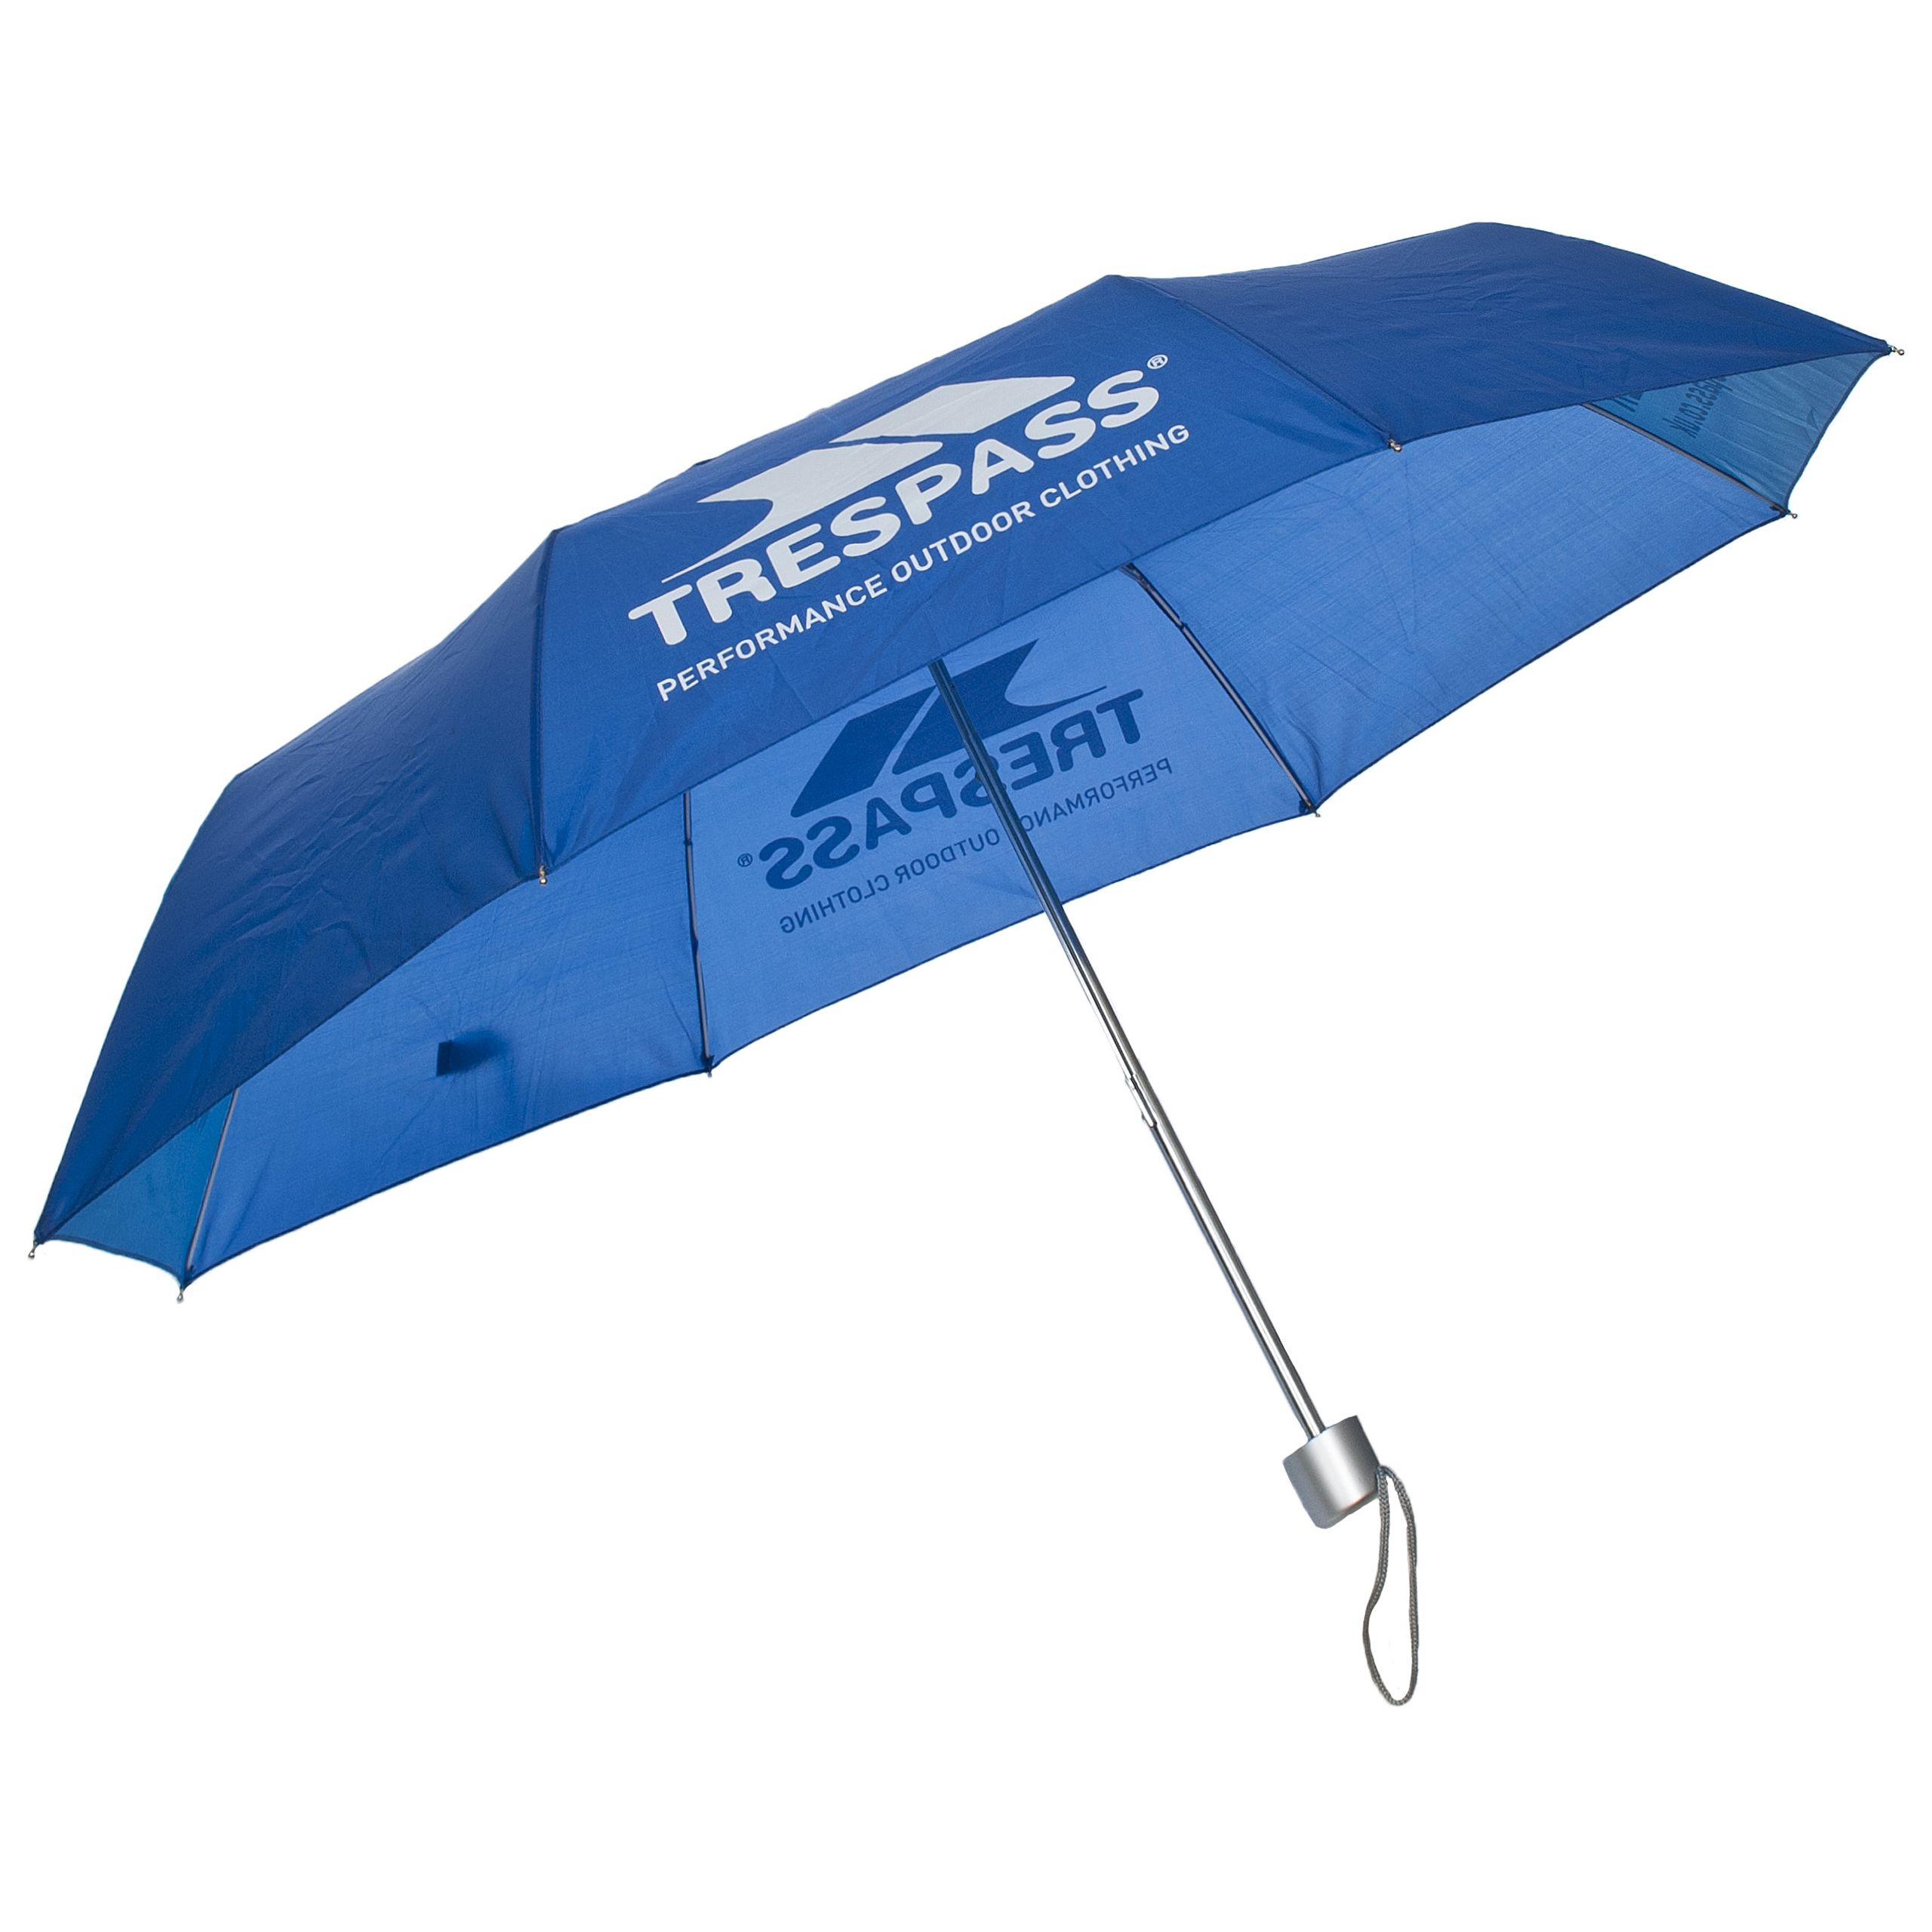 Blue Compact Umbrella